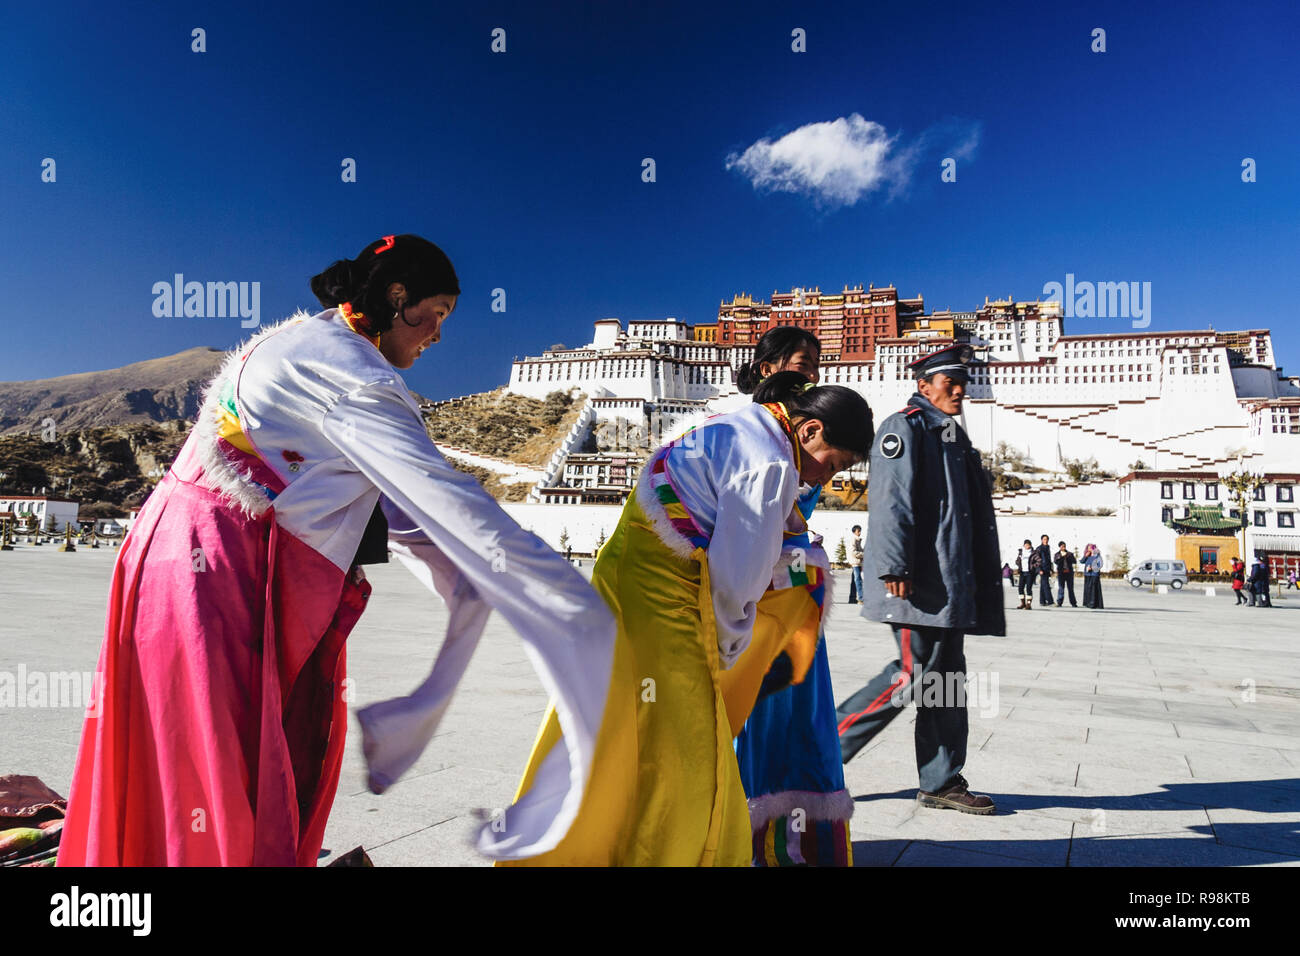 Lhassa, dans la région autonome du Tibet, Chine : un policier chinois marche dernières trois femmes tibétaines essayer costumes traditionnels à côté de palais du Potala. Sapin Banque D'Images